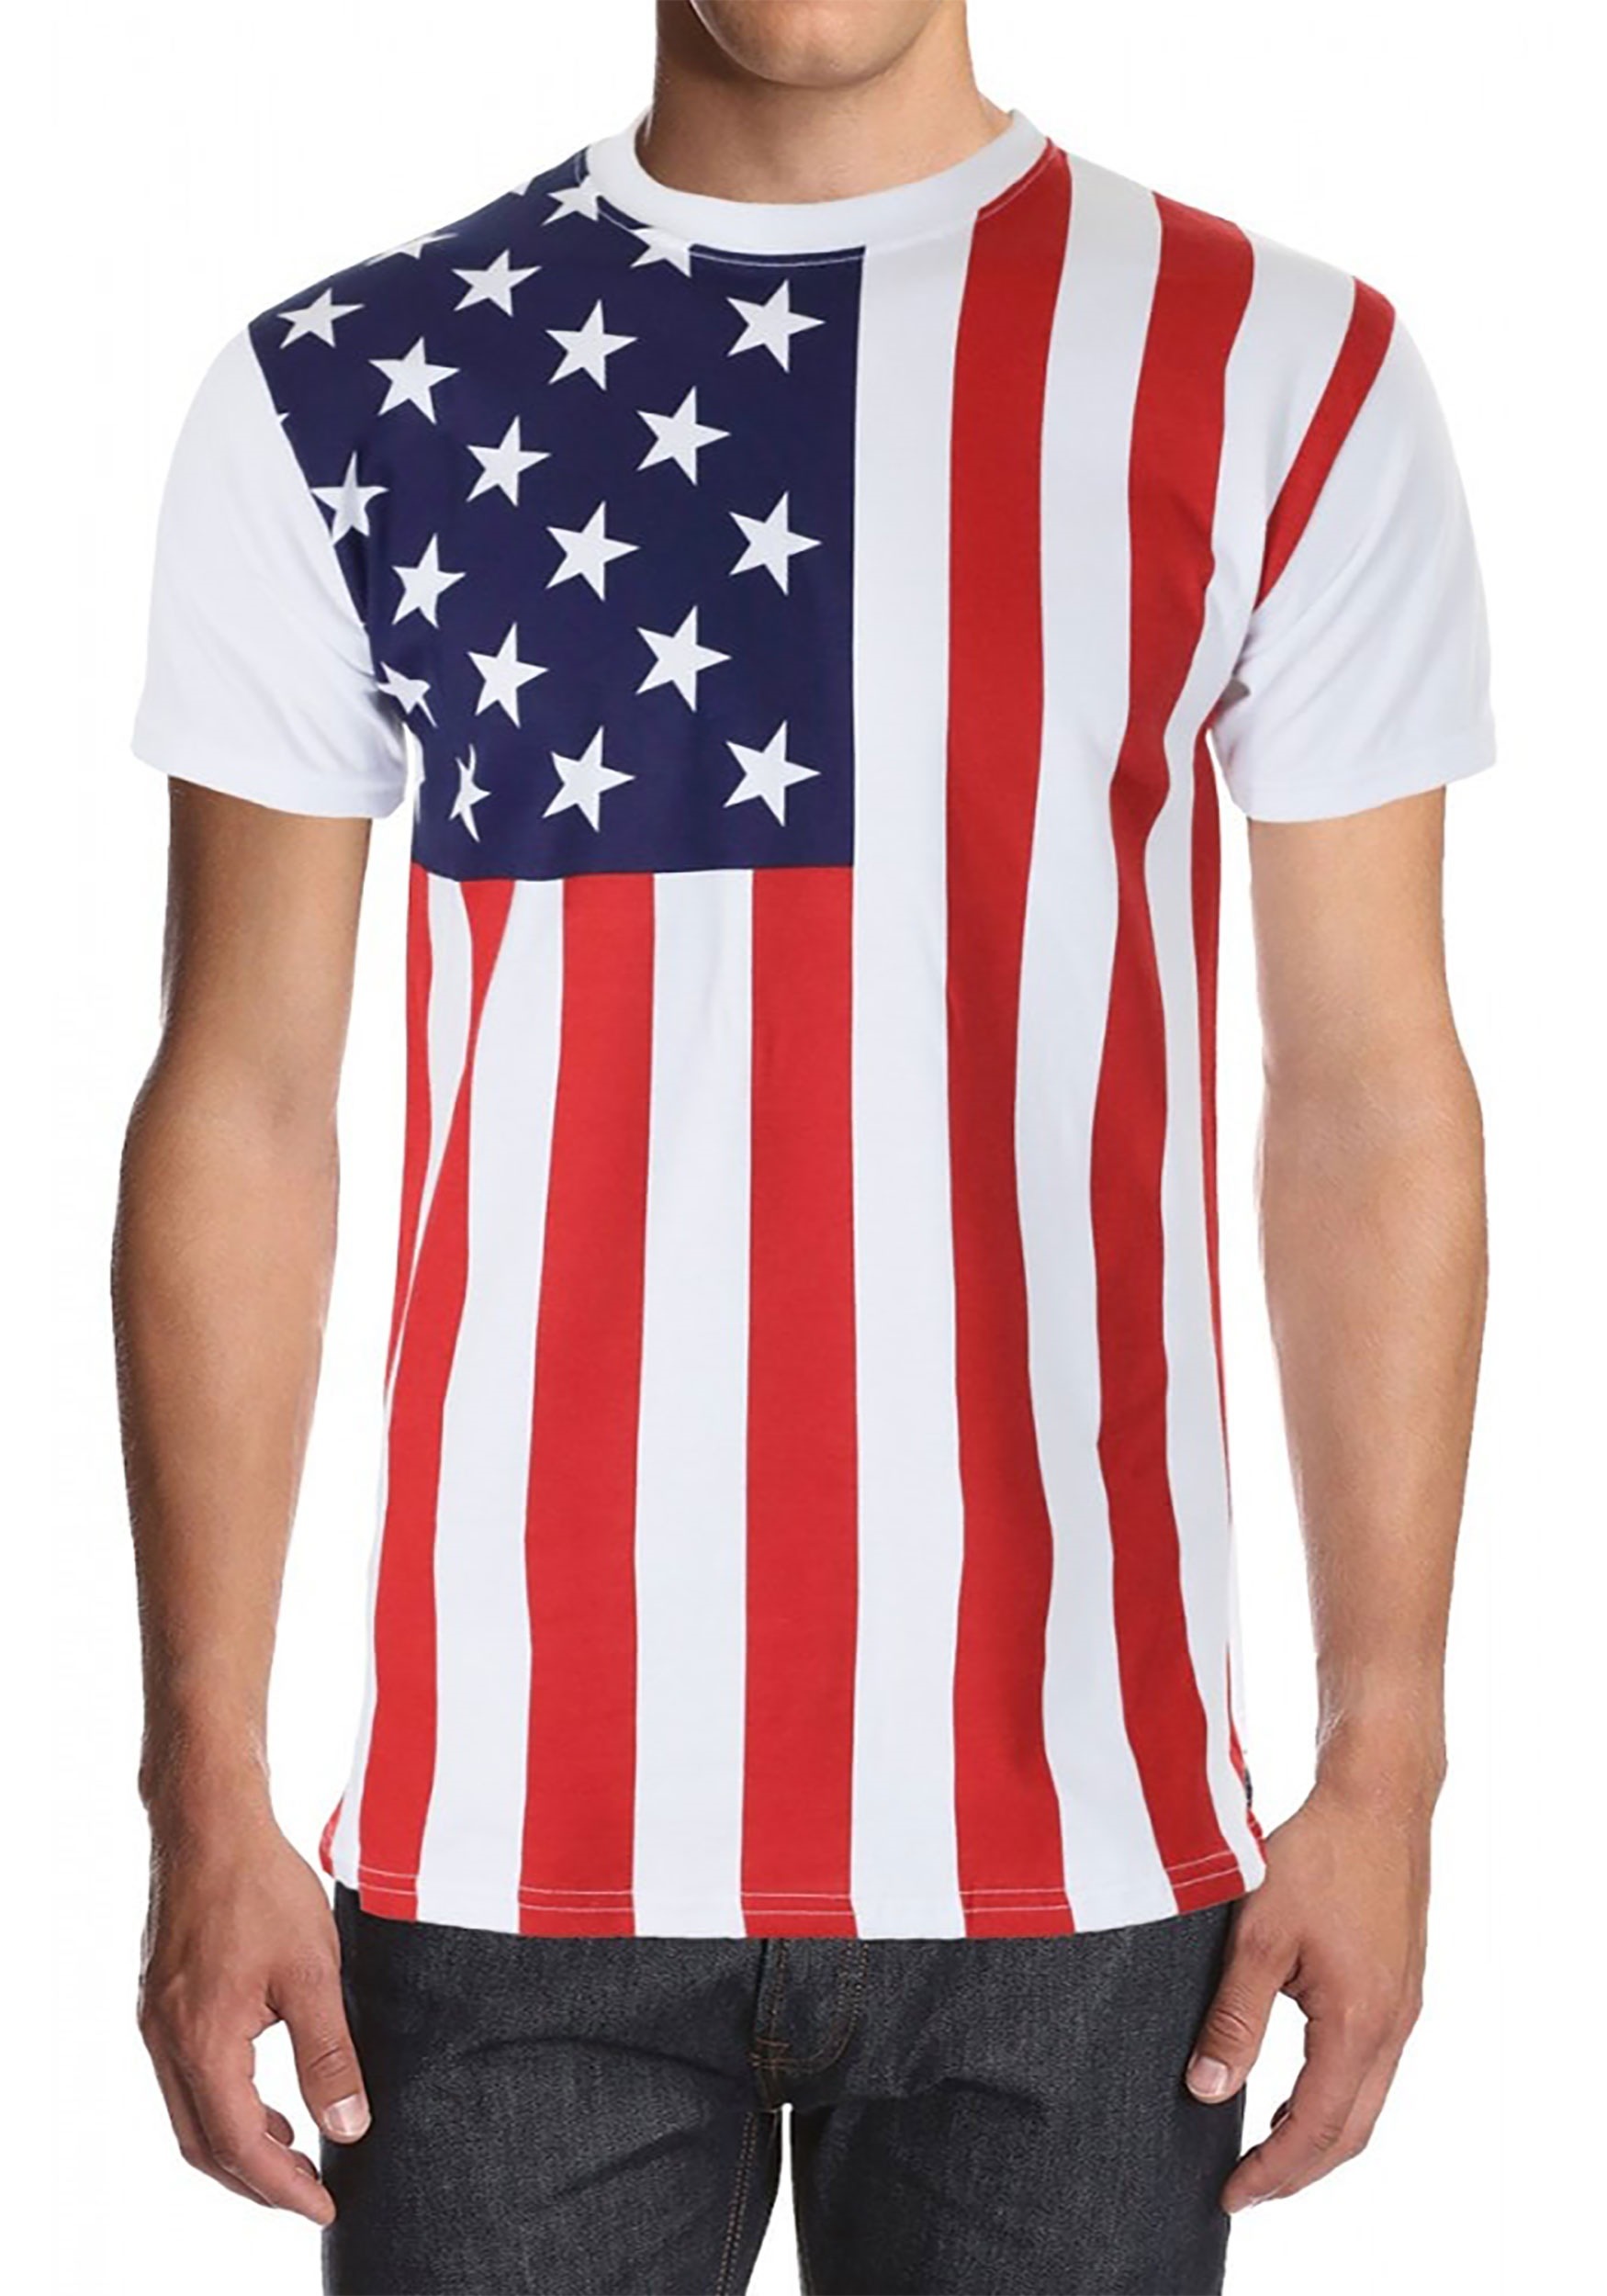 American Flag Shirt for Men